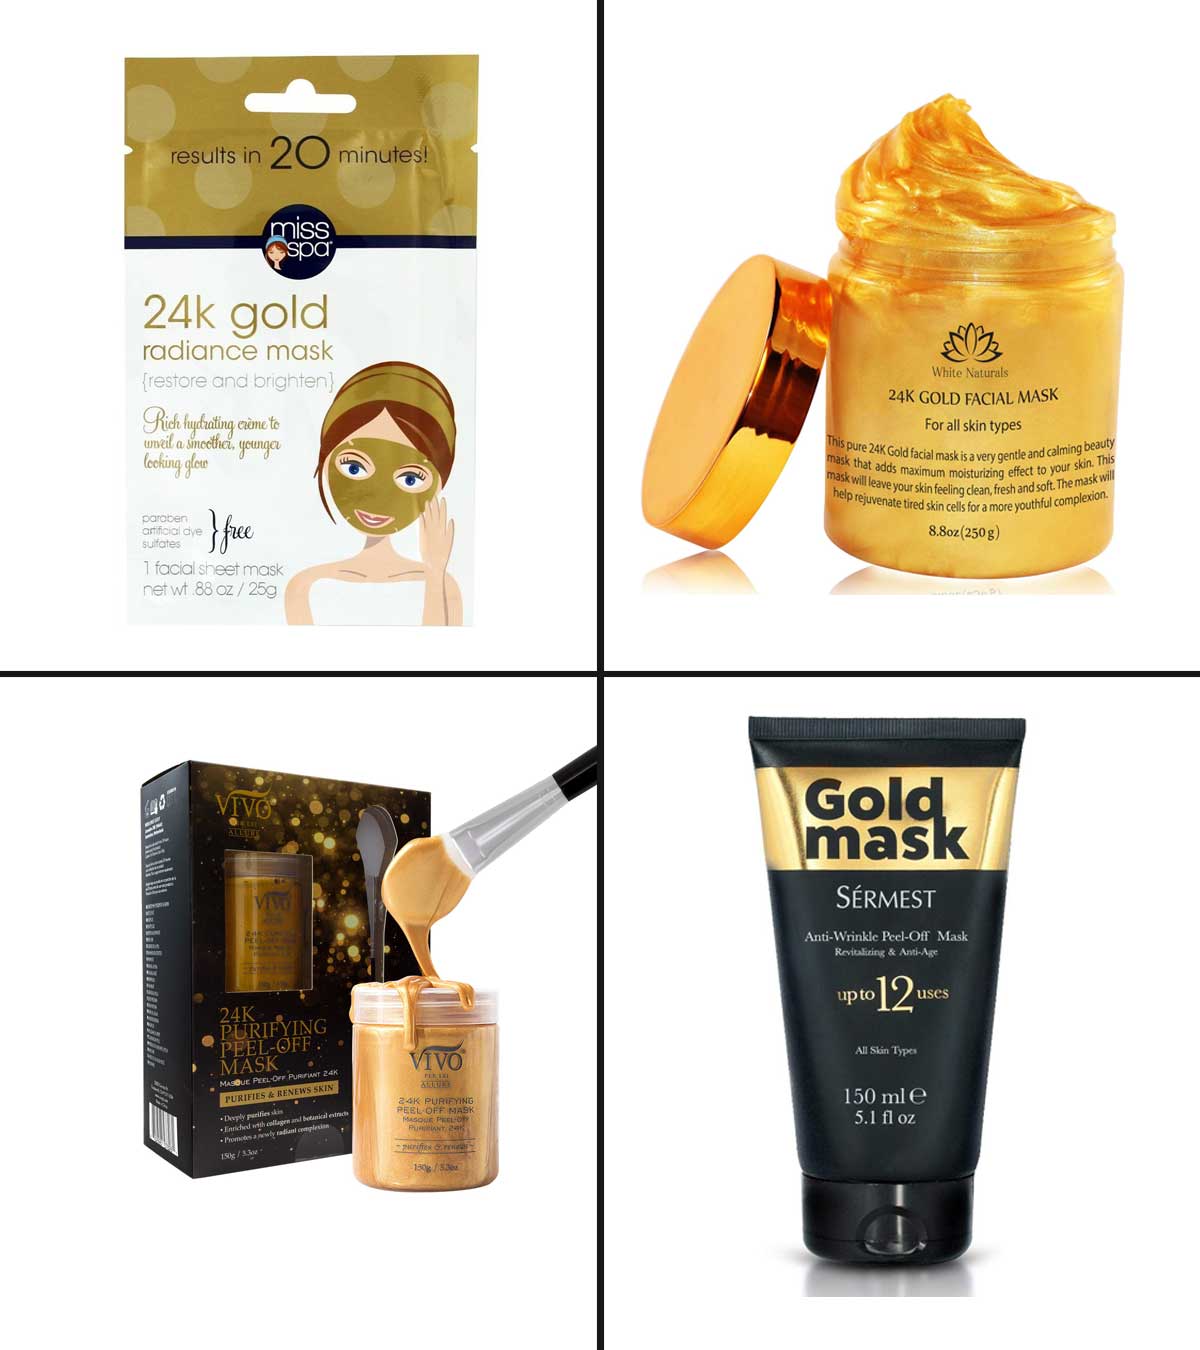 10 Best Gold Face Masks Of 2020